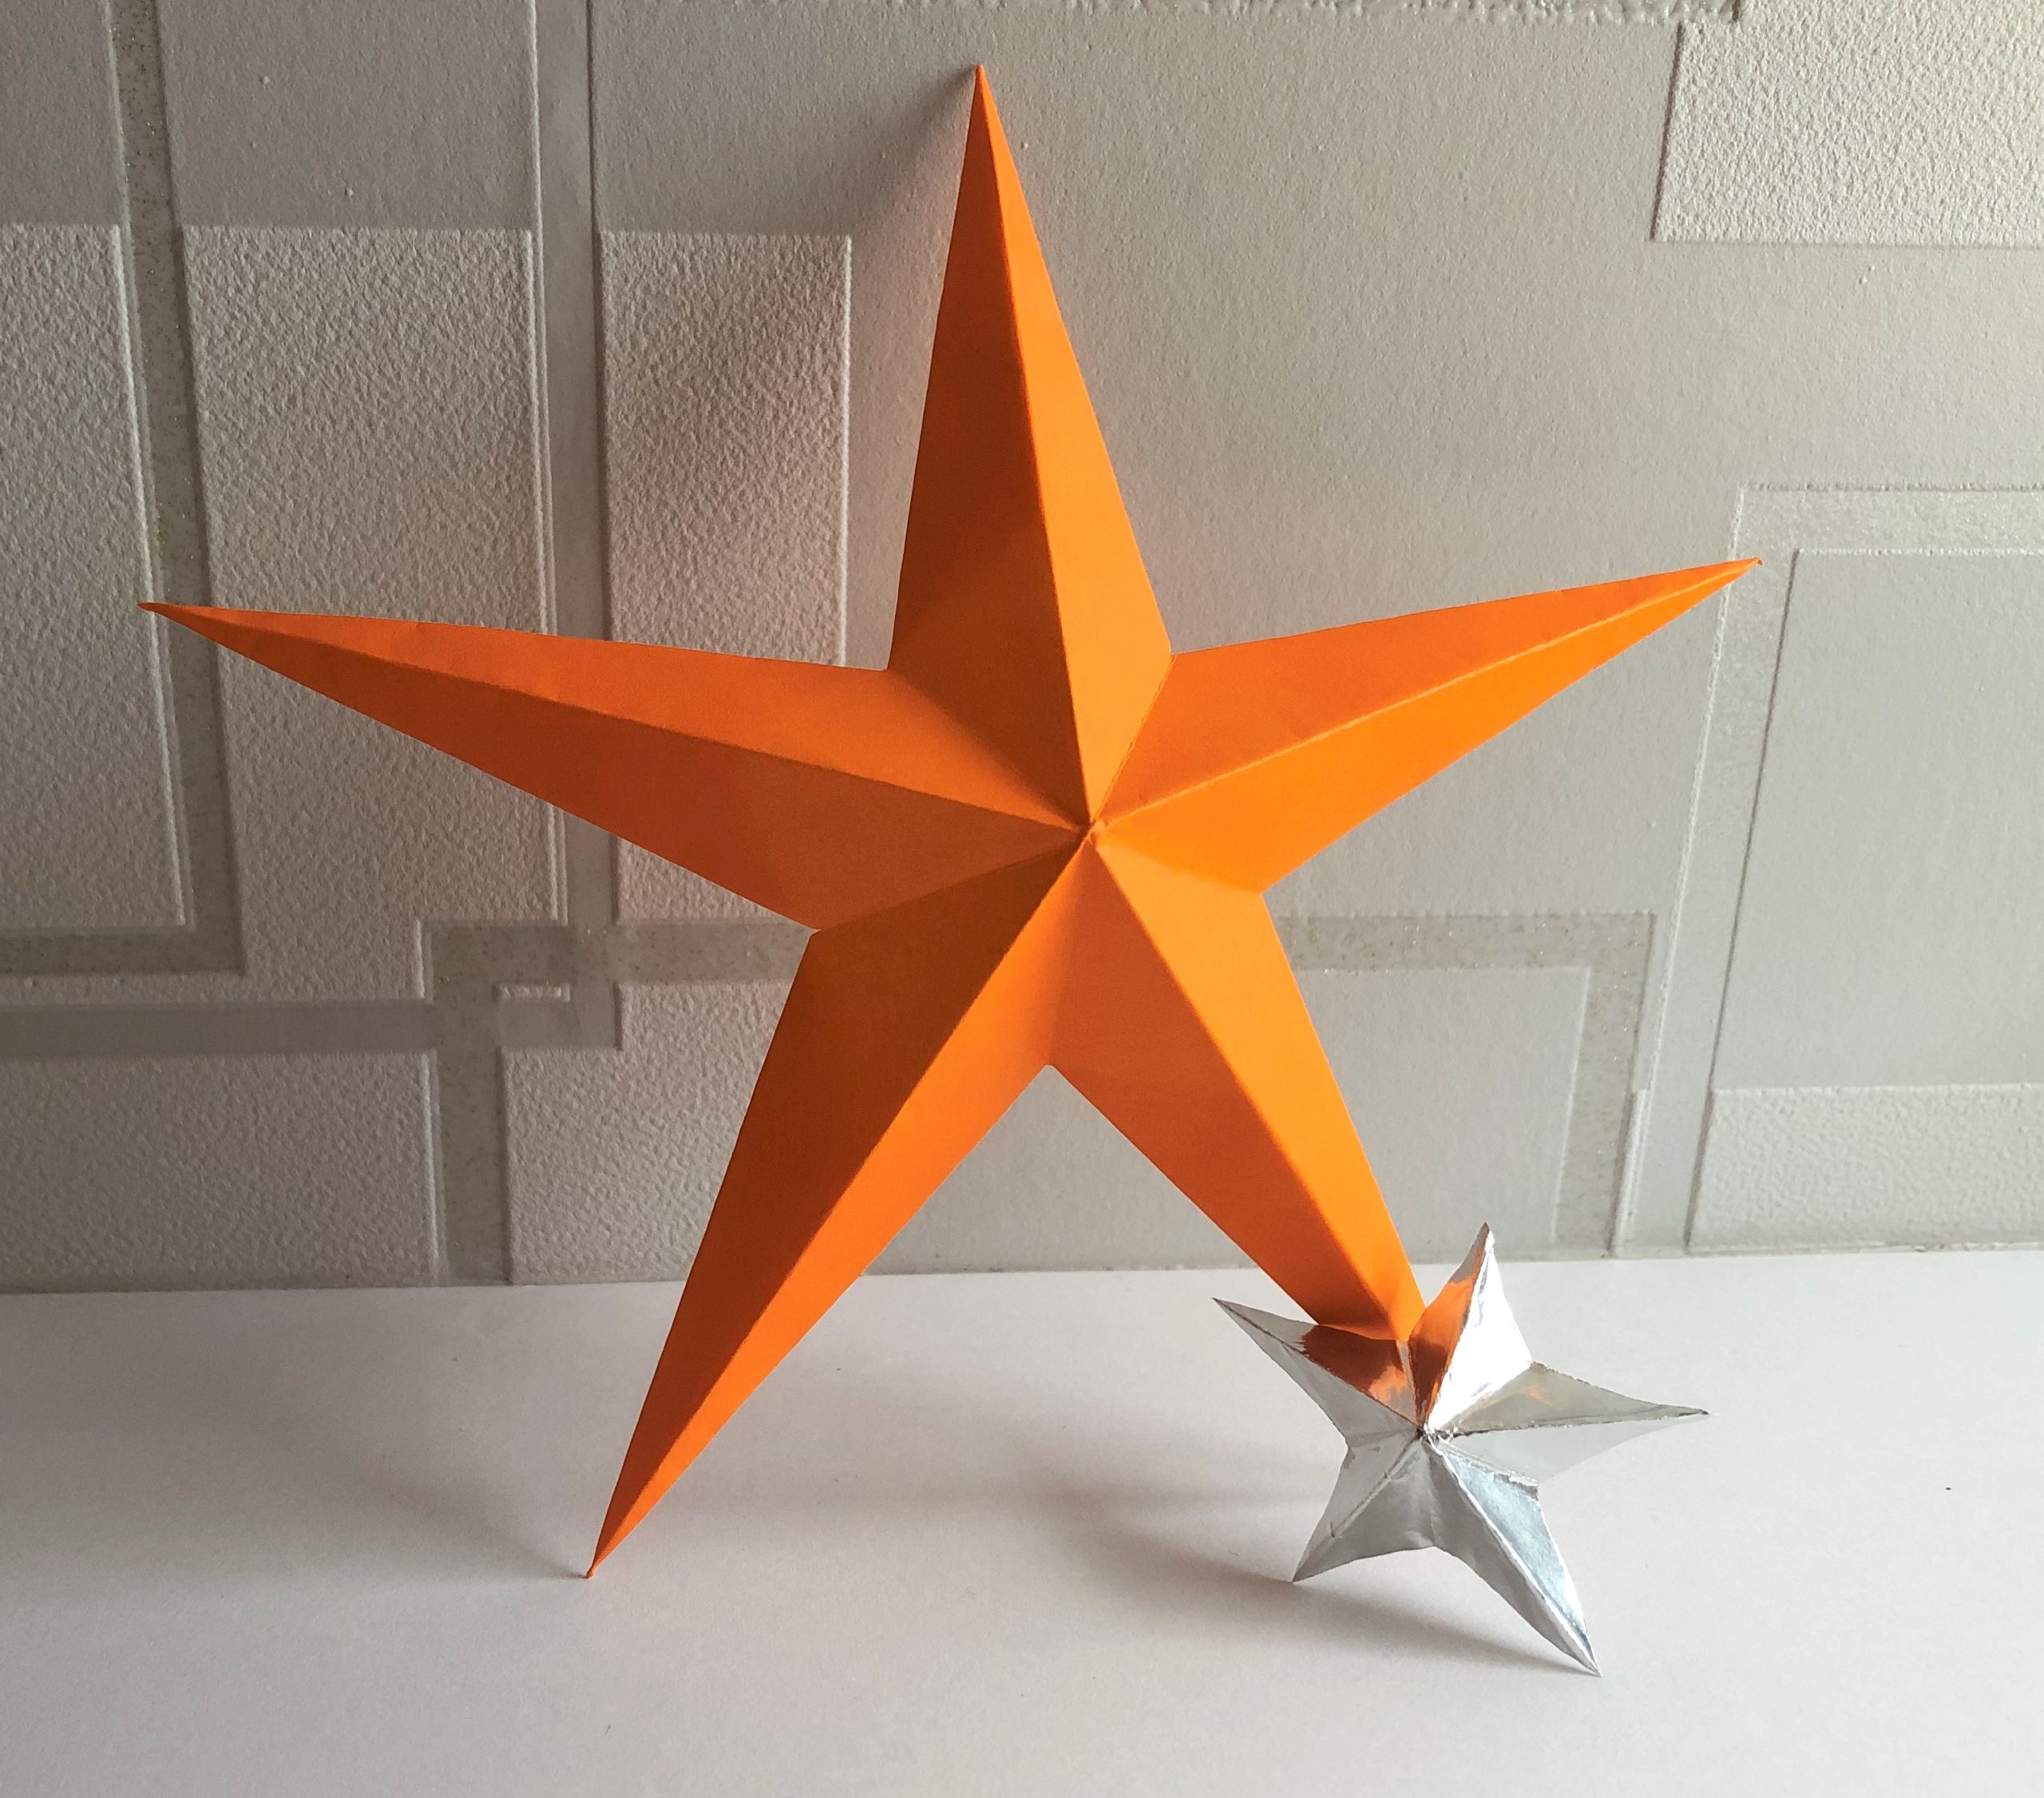 クリスマスツリーの飾りにも最適！5枚の折り紙で作る、立体的な星の折り方。 | 神戸の印刷、出版と販促。前川企画印刷公式ブログ「嵐のマエブロ」